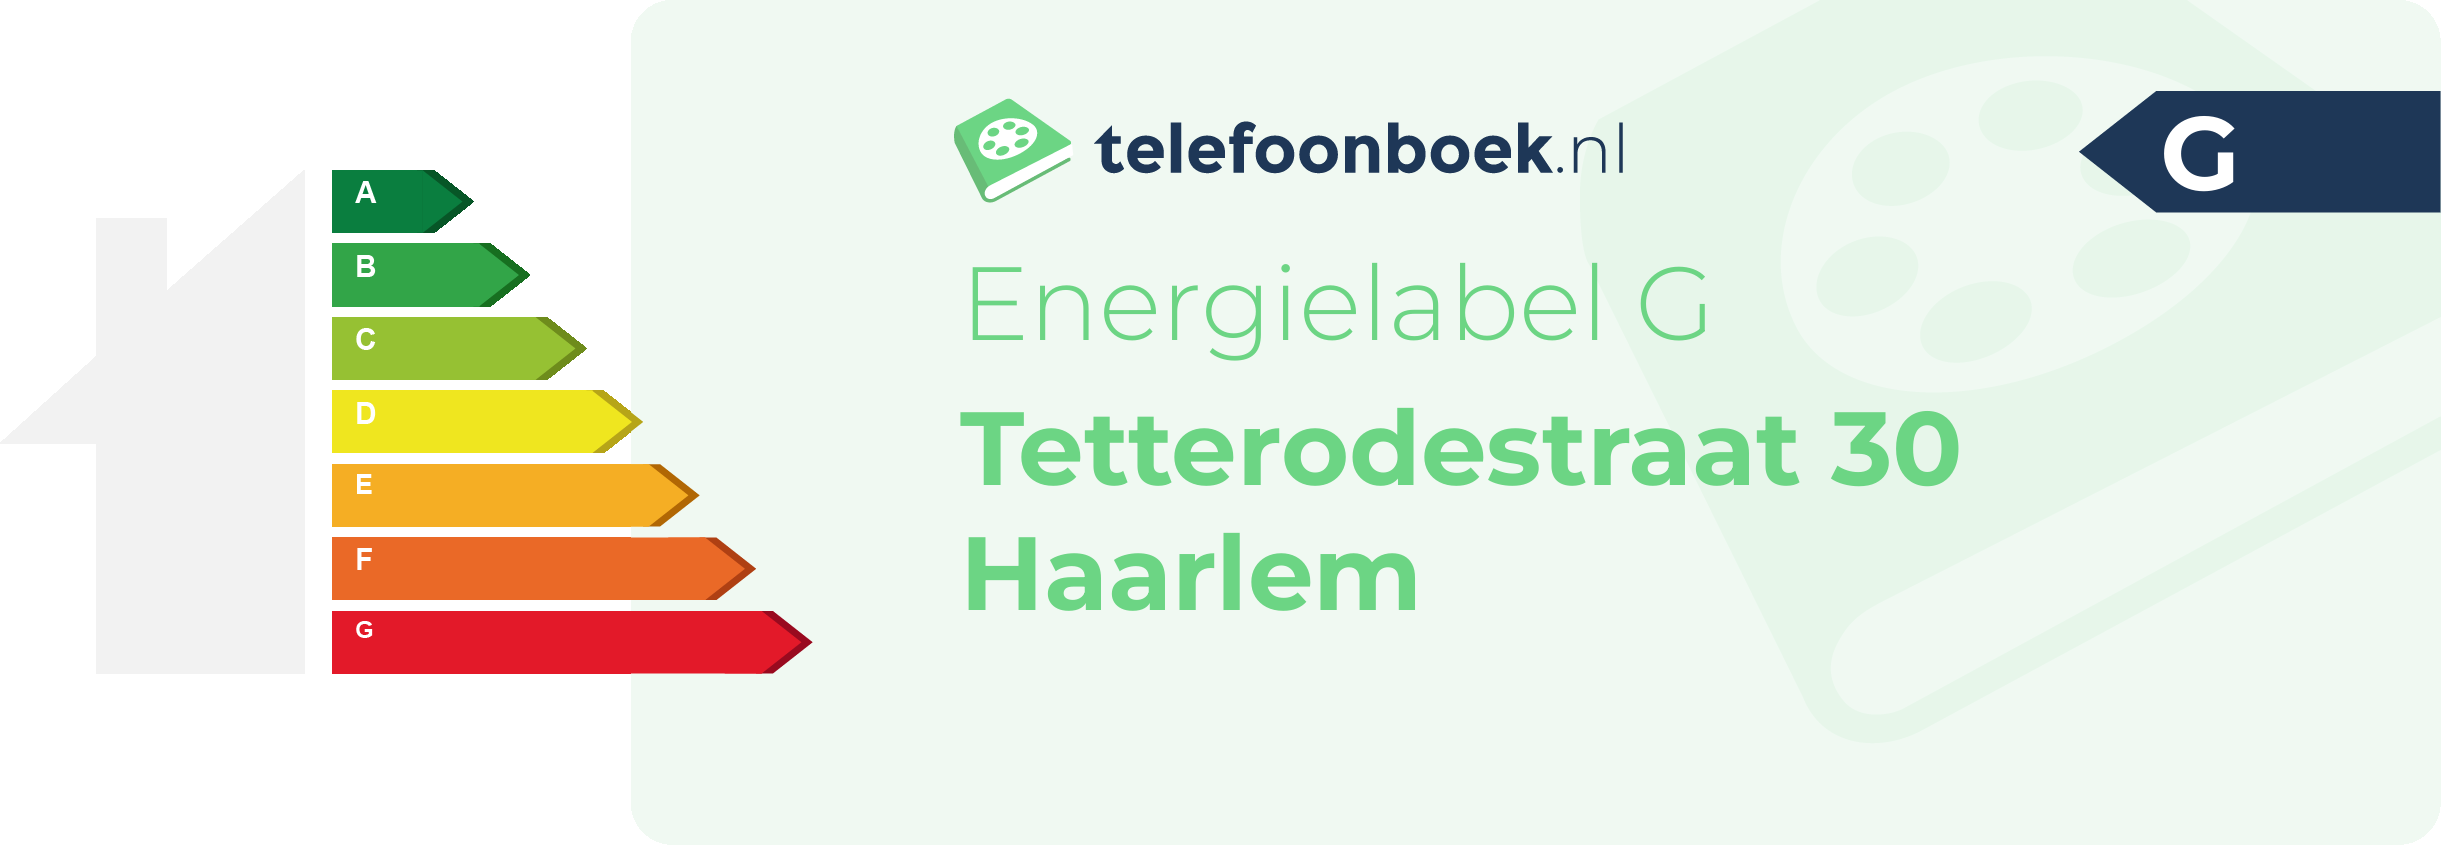 Energielabel Tetterodestraat 30 Haarlem